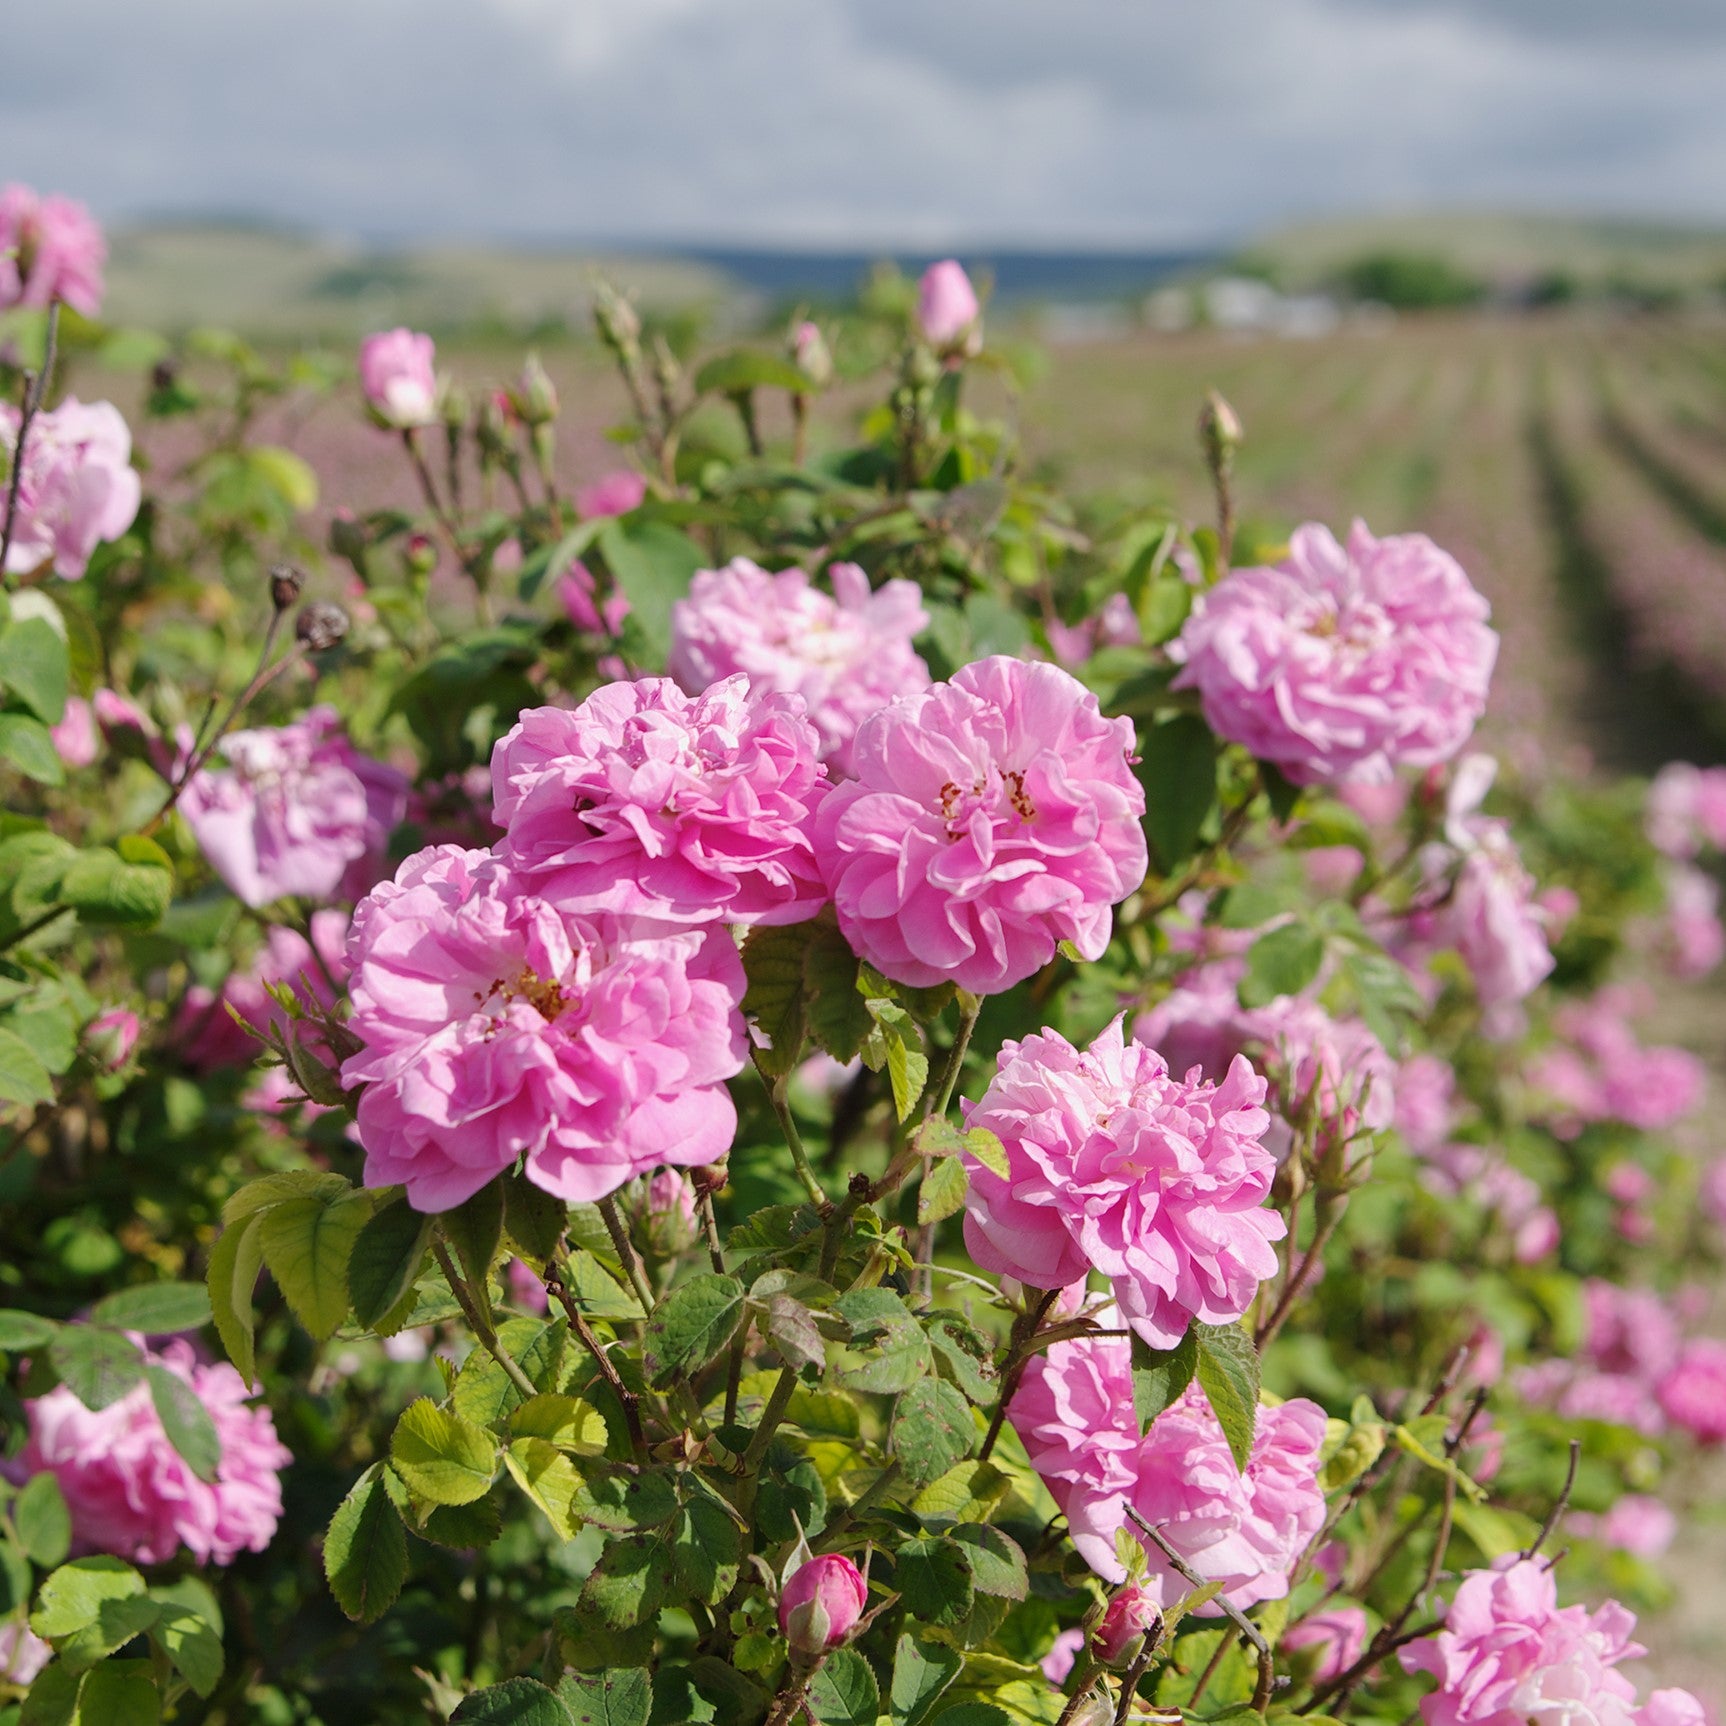 Rose Blossom Hydrosol Organic - from Bulgaria